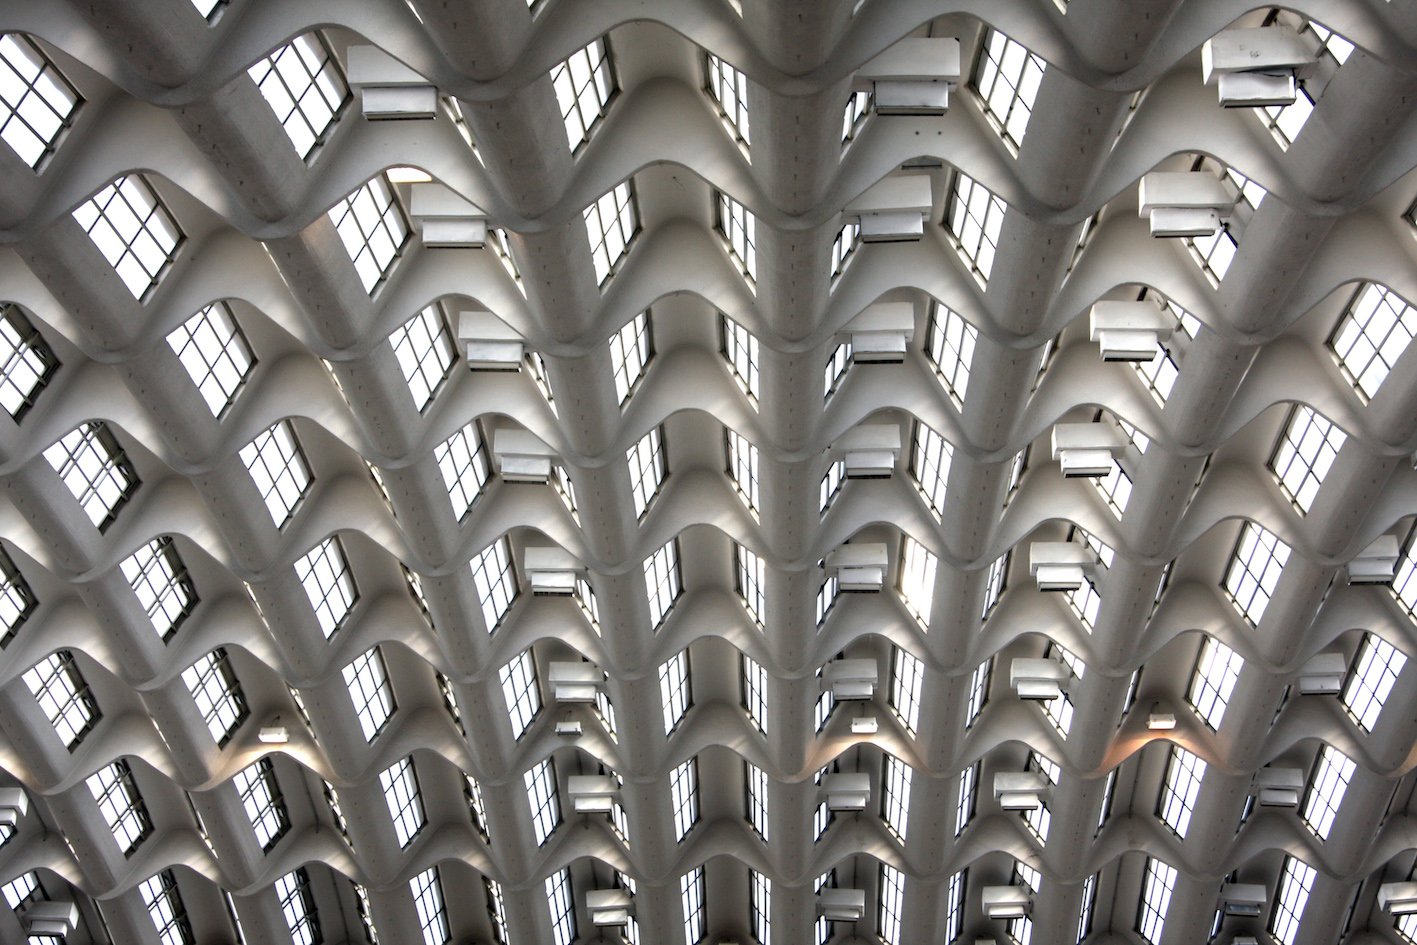 Palazzo di Torino Esposizioni ©Redazione web Comune di Torino